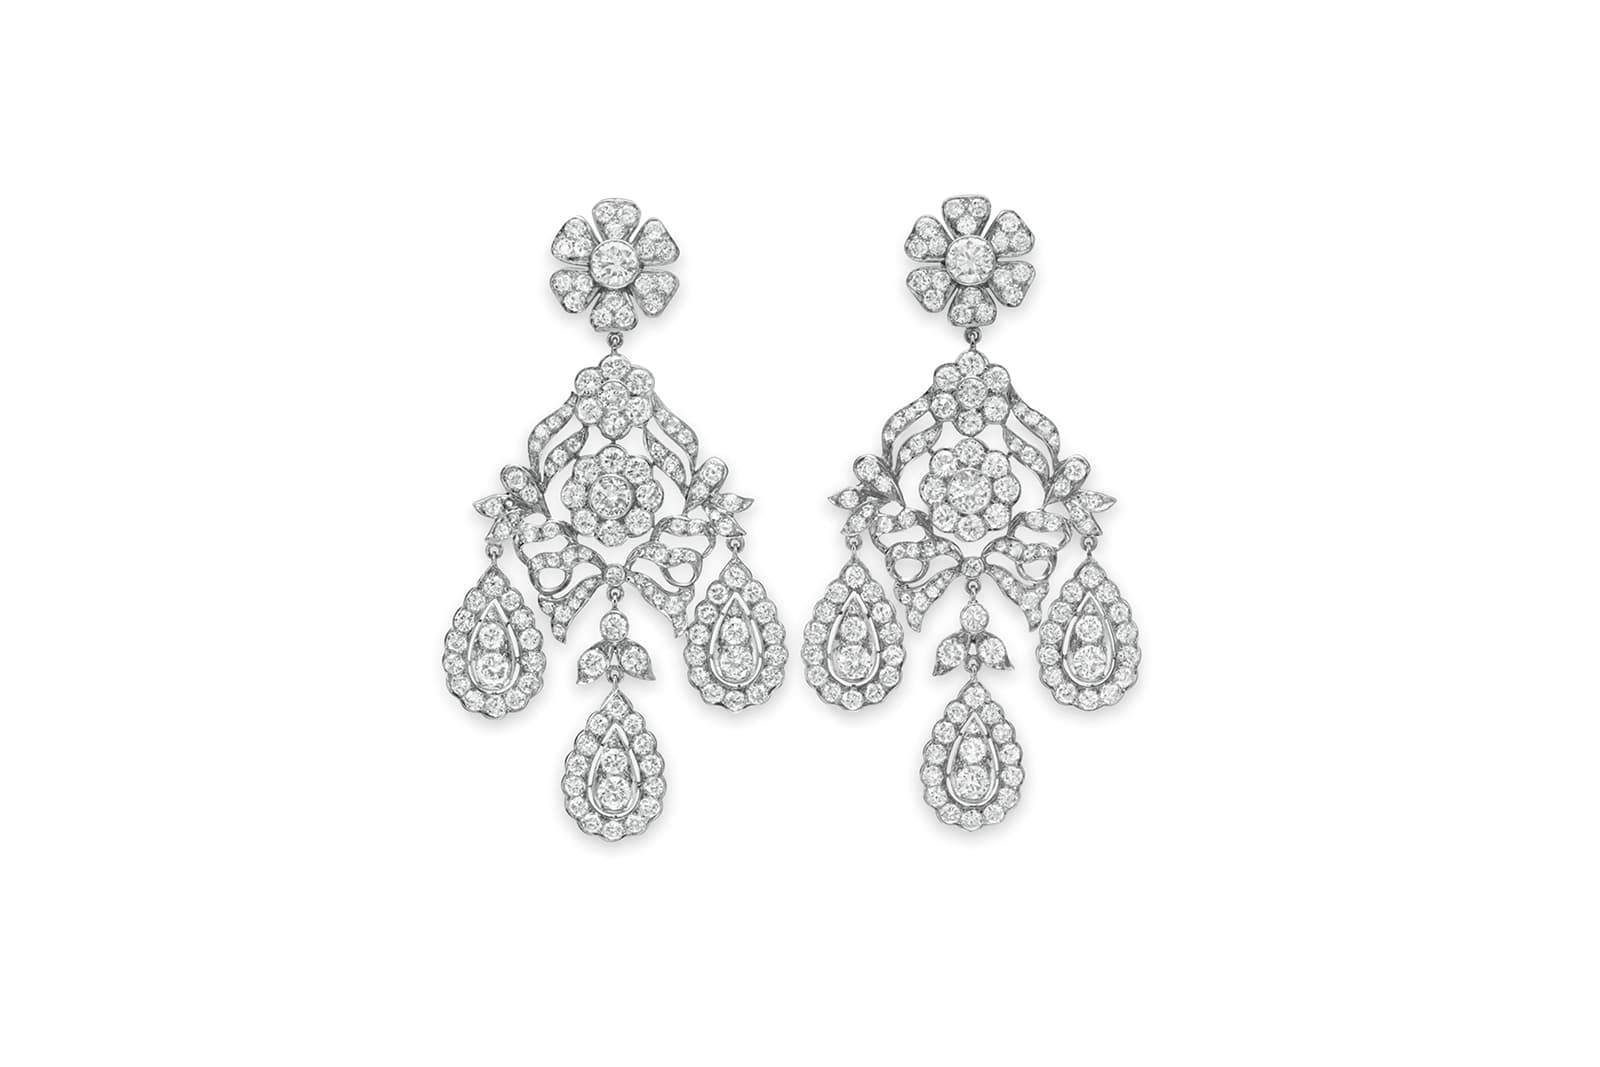 Elizabeth Taylor: A Lifelong Love Affair with Jewellery